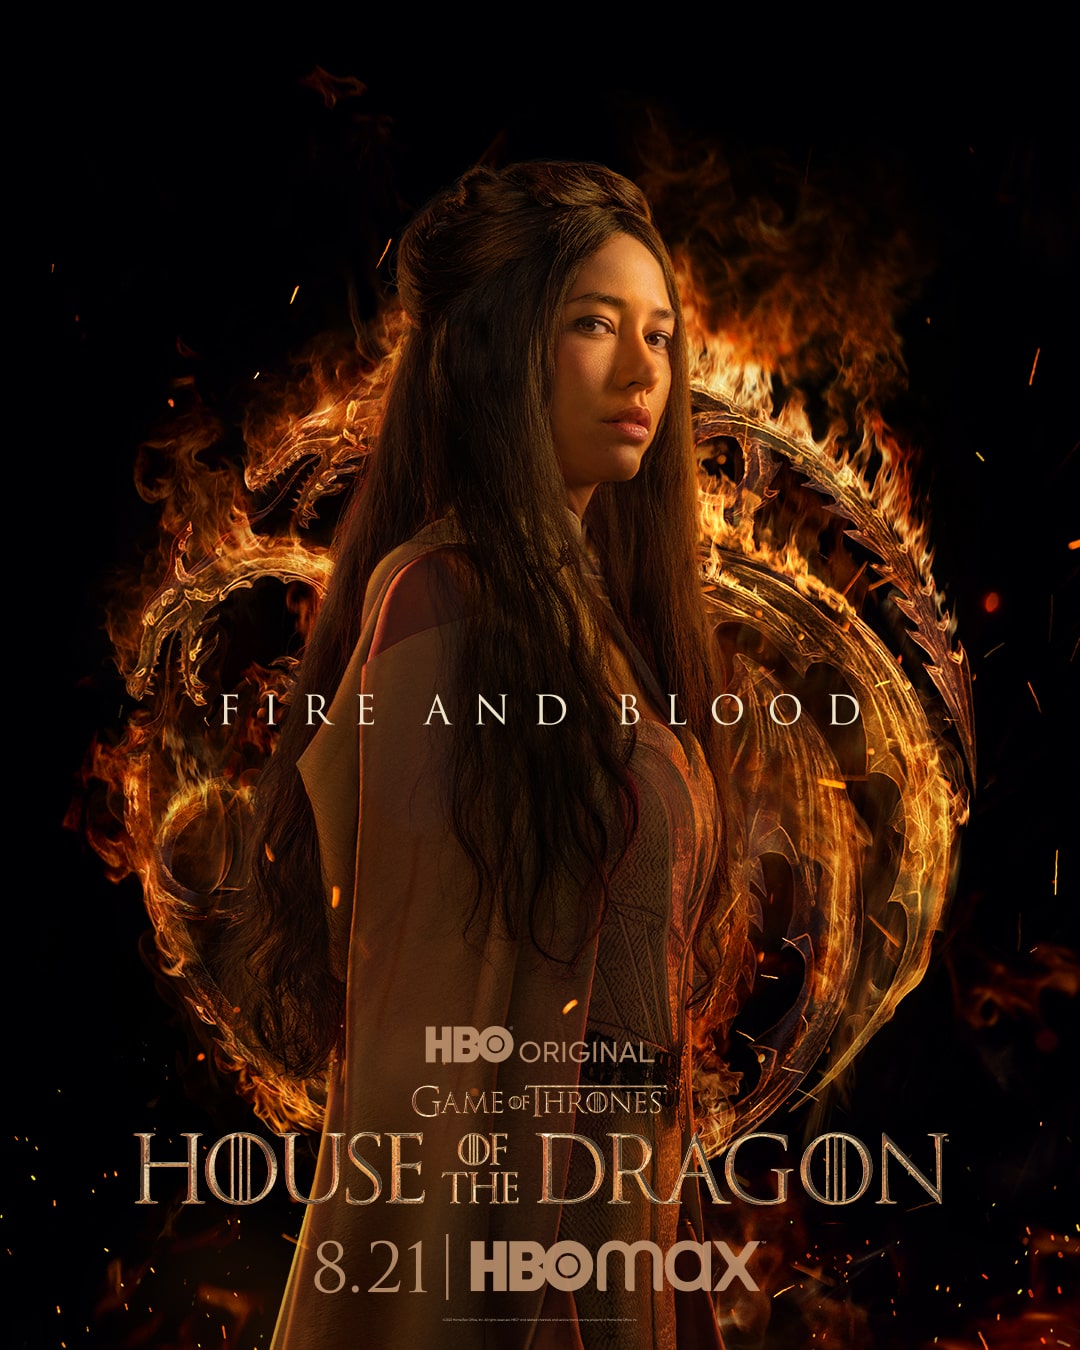 House of the Dragon: estreia, teaser e posters da 2.ª temporada - Anissa